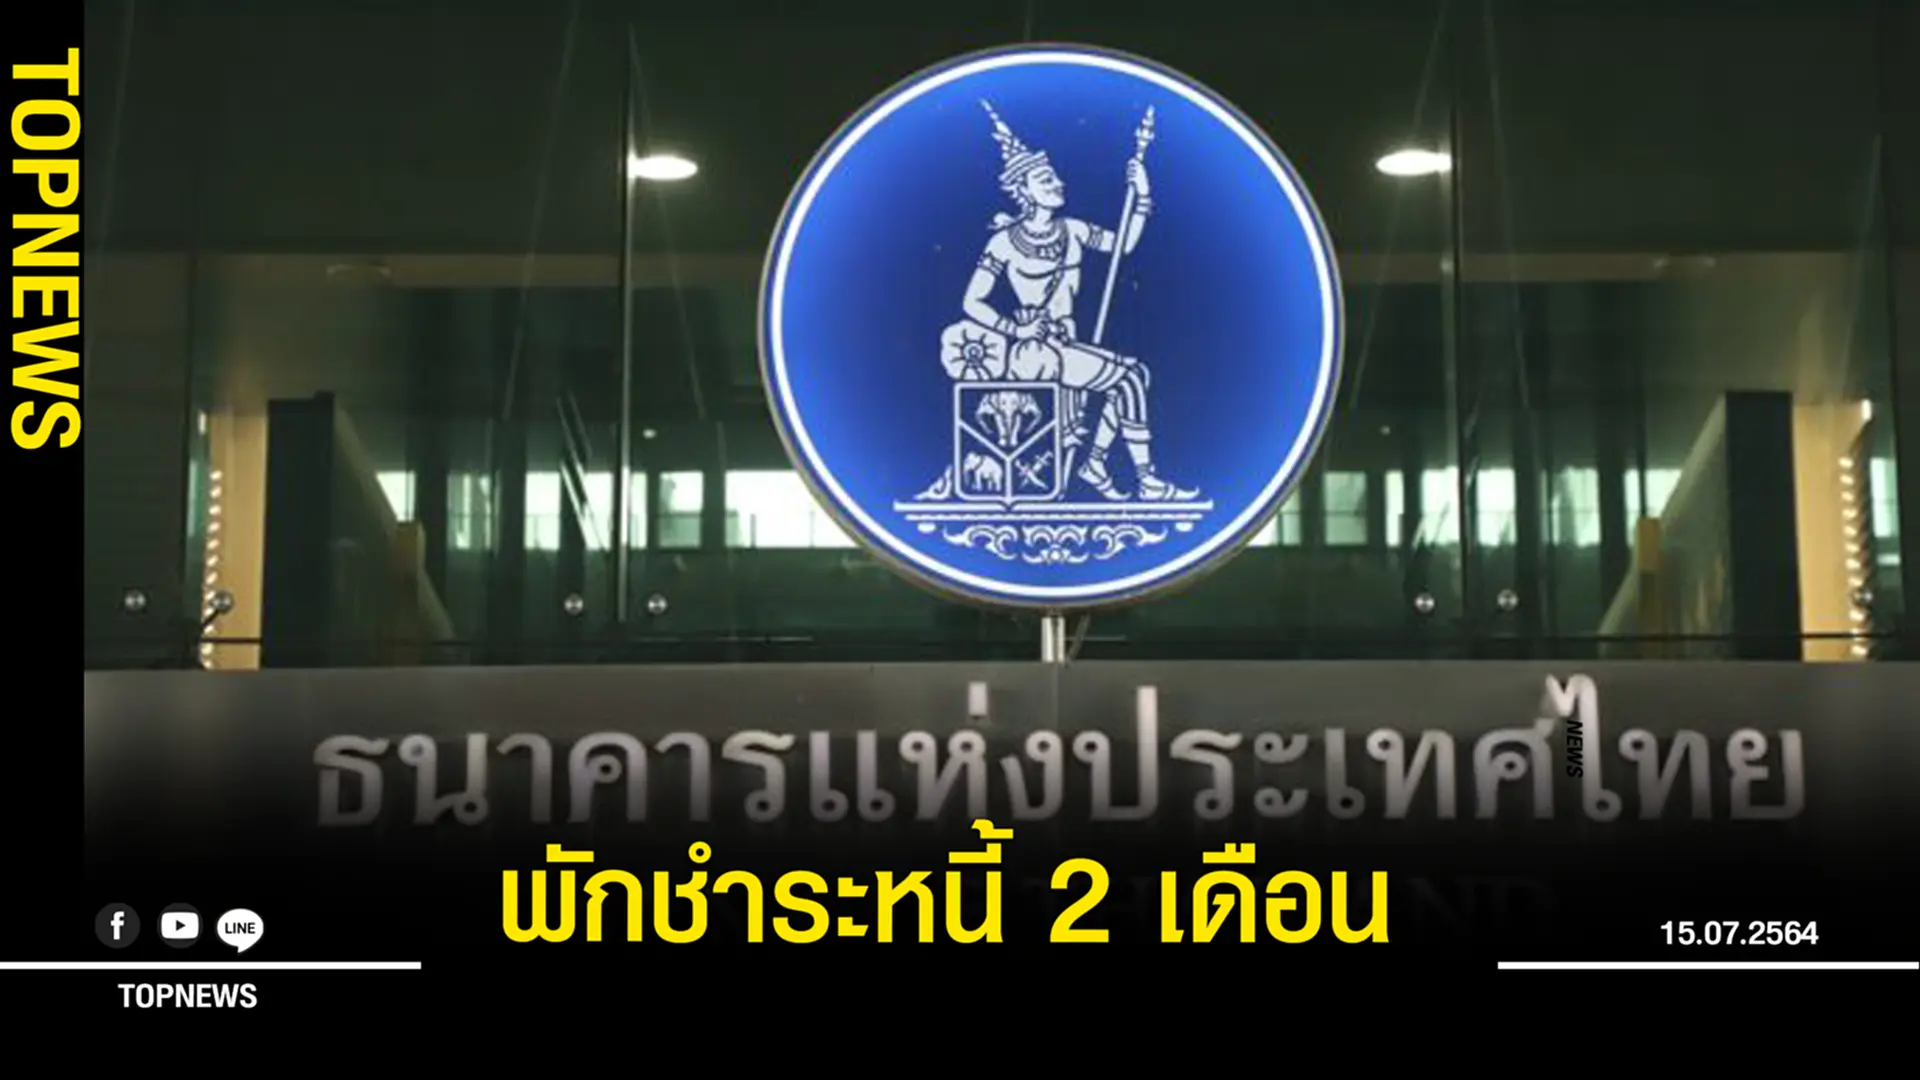 แบงก์ชาติจับมือสมาคมธนาคารไทย และสมาคมธนาคารนานาชาติ ออกมาตรการพักชำระหนี้ 2 เดือน